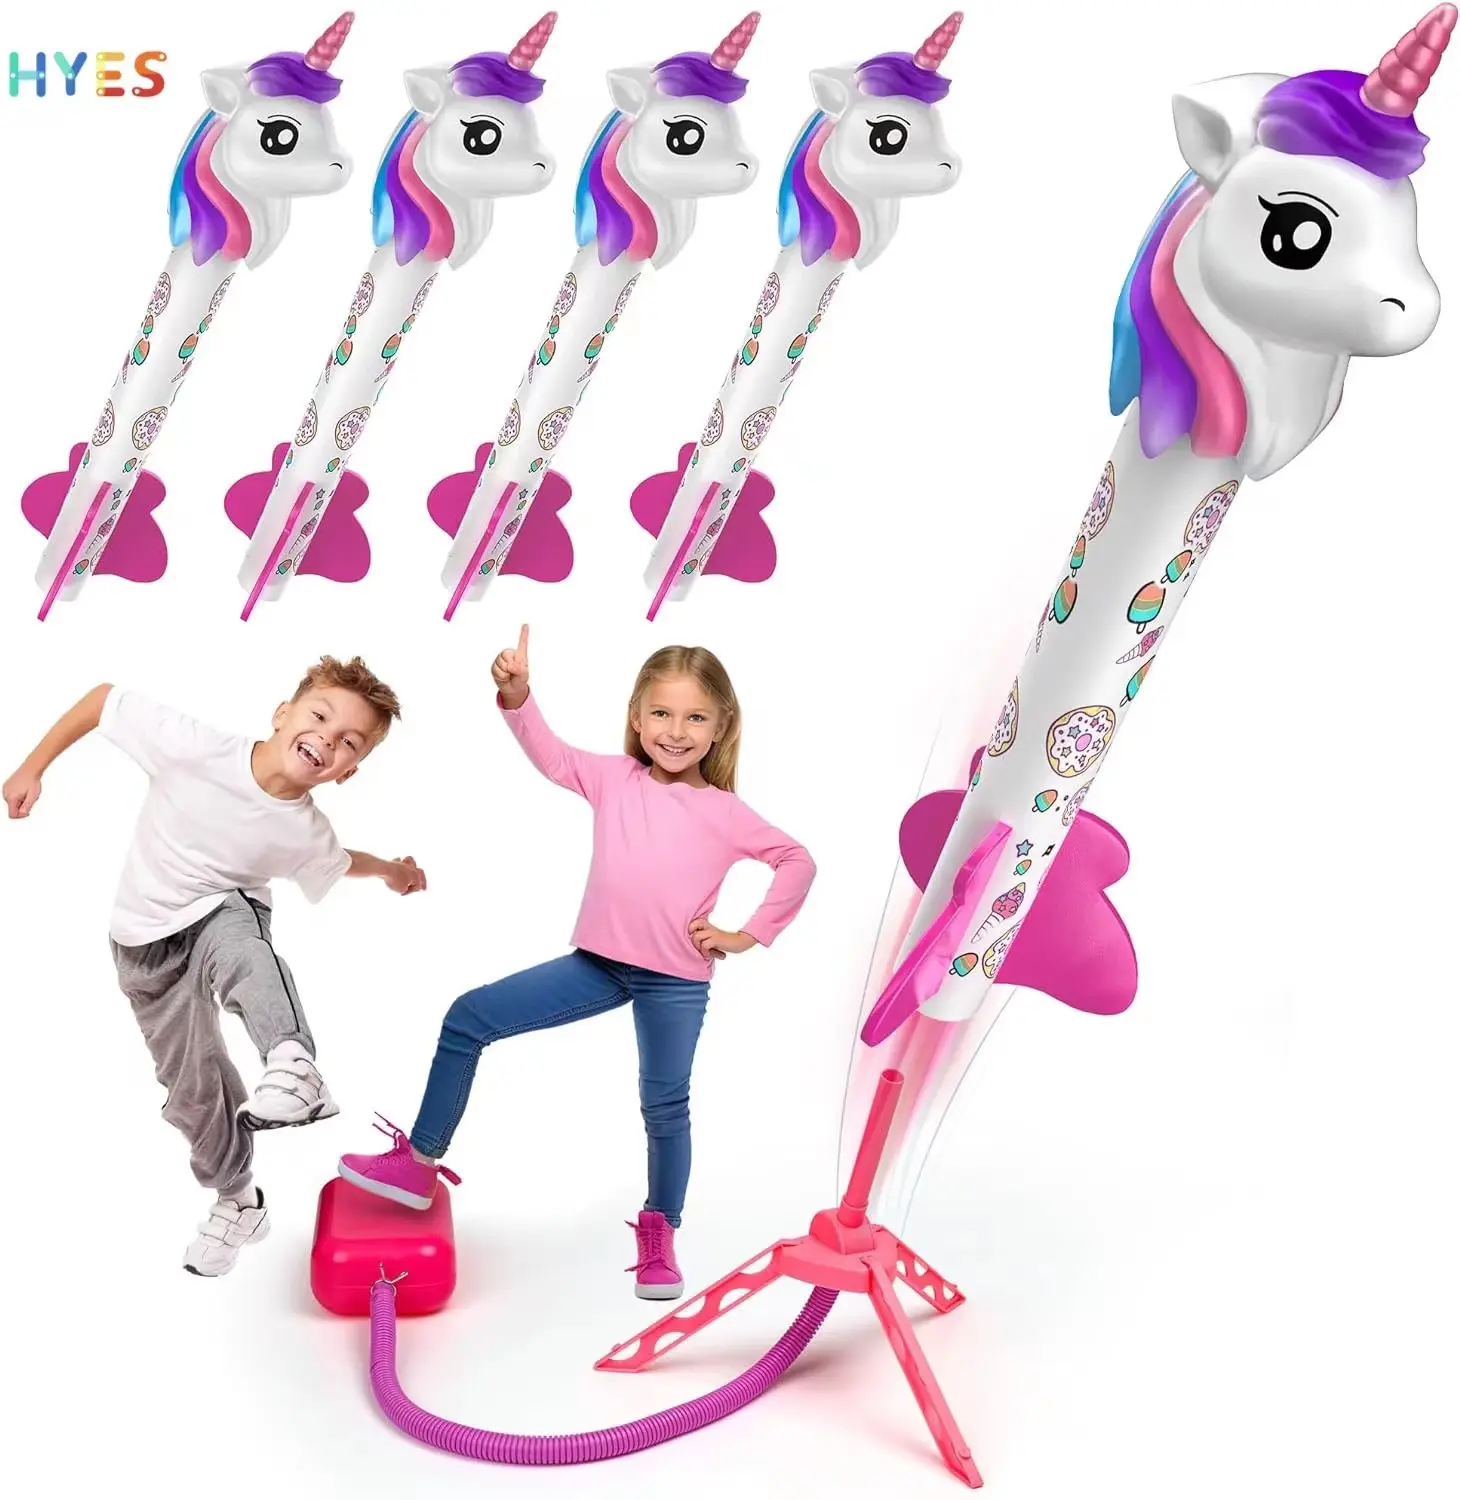 Huiye sıcak satış Unicorn roket başlatıcısı oyuncak açık oynarken yaz oyuncak hediye güvenlik plastik Stomp roket başlatıcısı çocuk oyuncakları